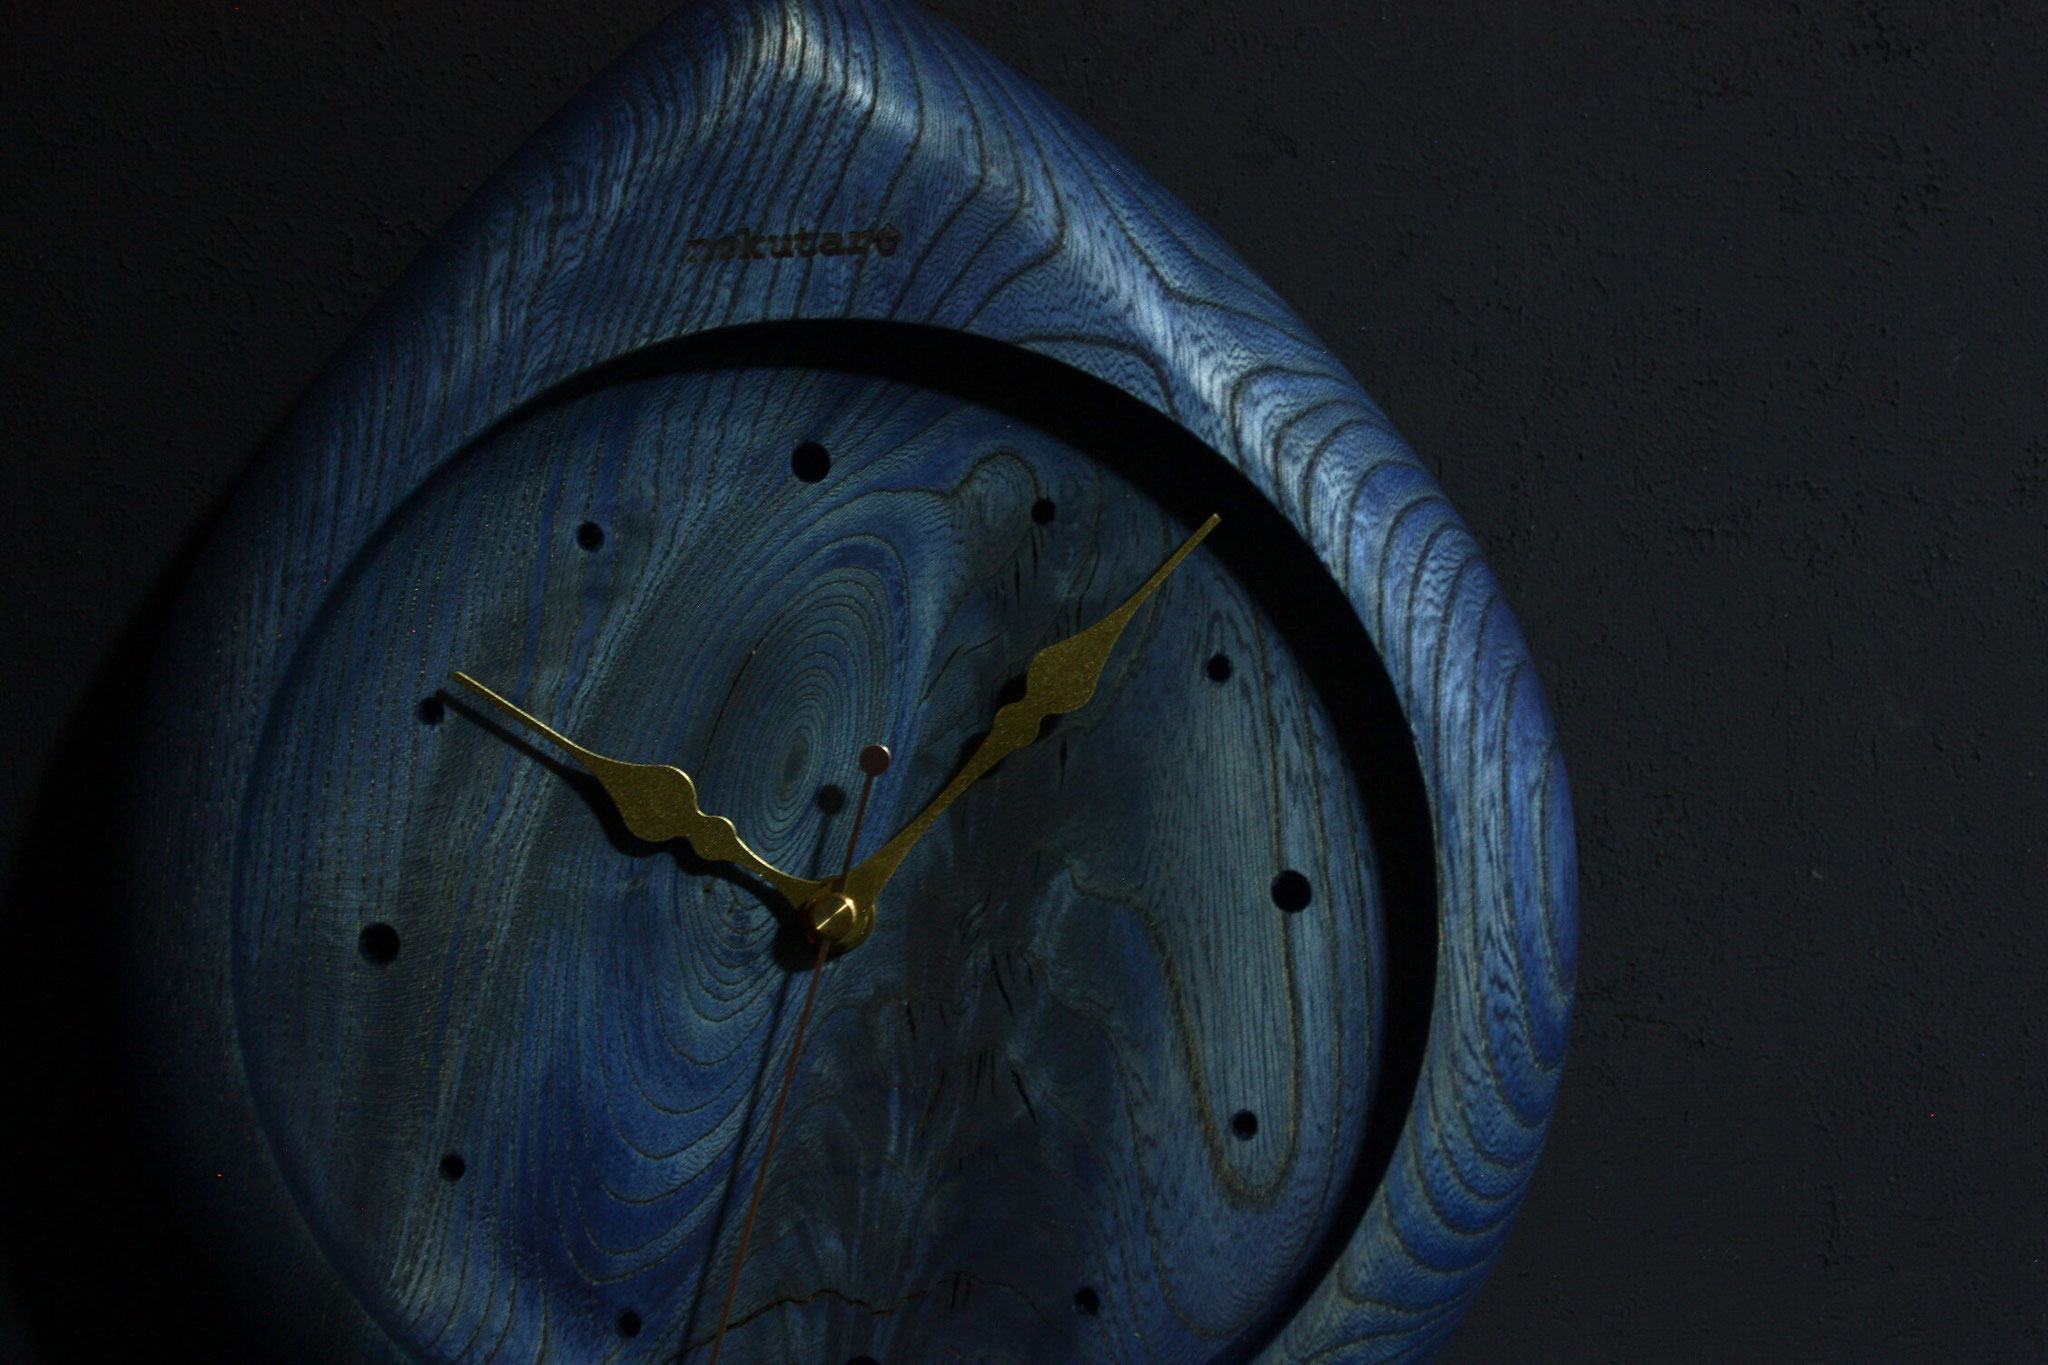 壁掛け時計（sizuku：小） - 飛騨新伝統工芸 ノクターレ